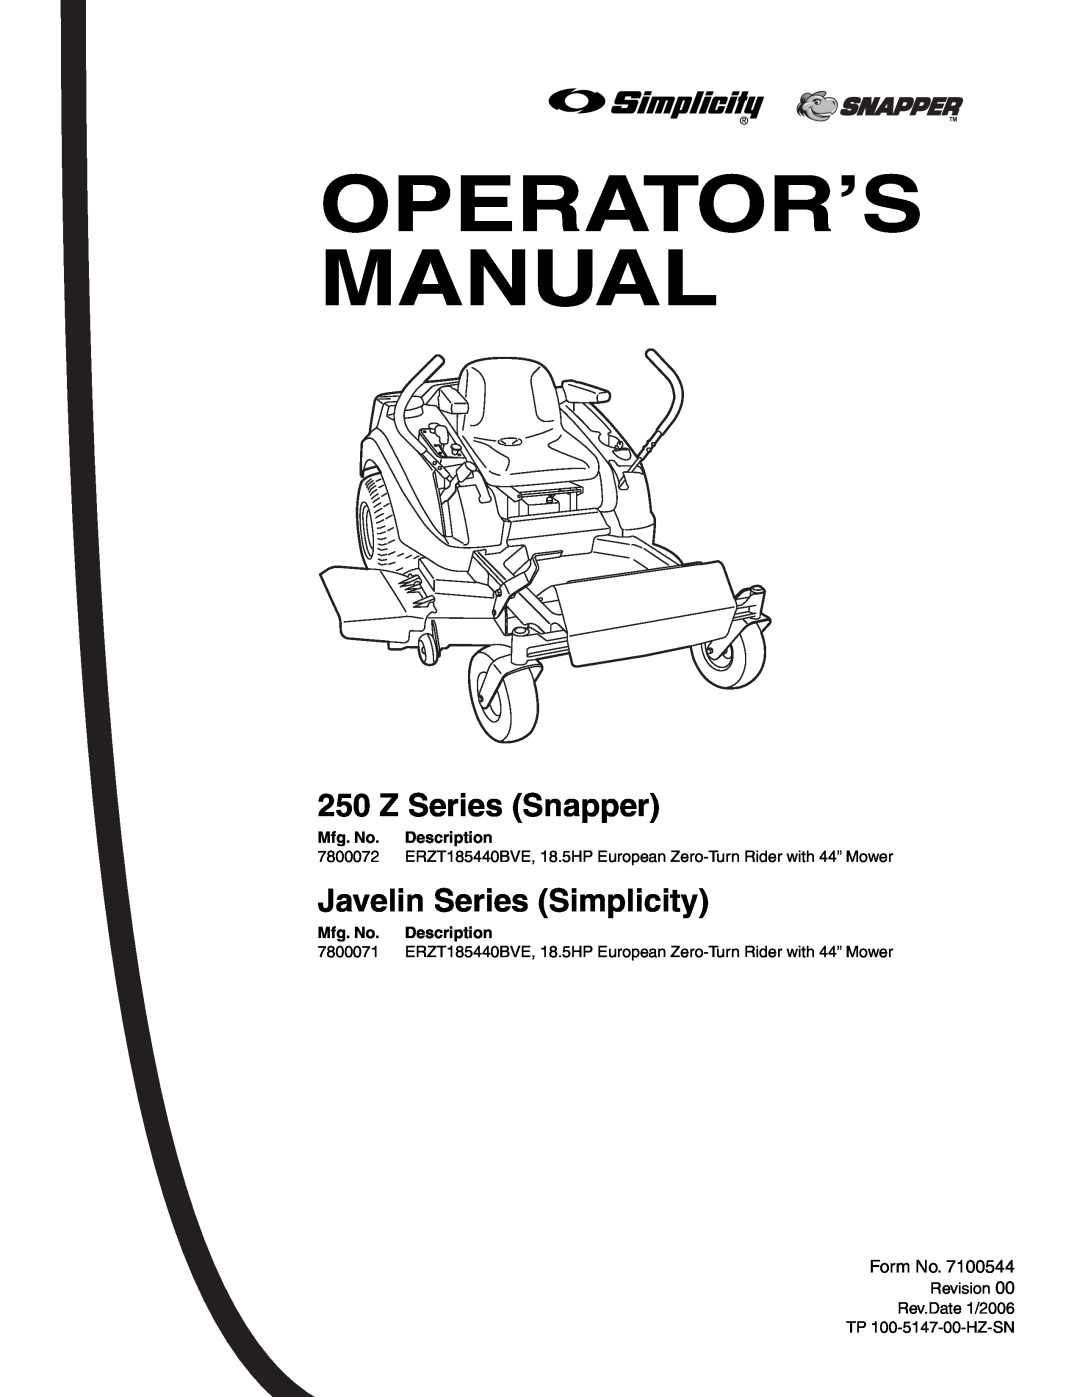 Simplicity 250 Z manual Z Series Snapper, Javelin Series Simplicity, Operator’S Manual, Mfg. No. Description 